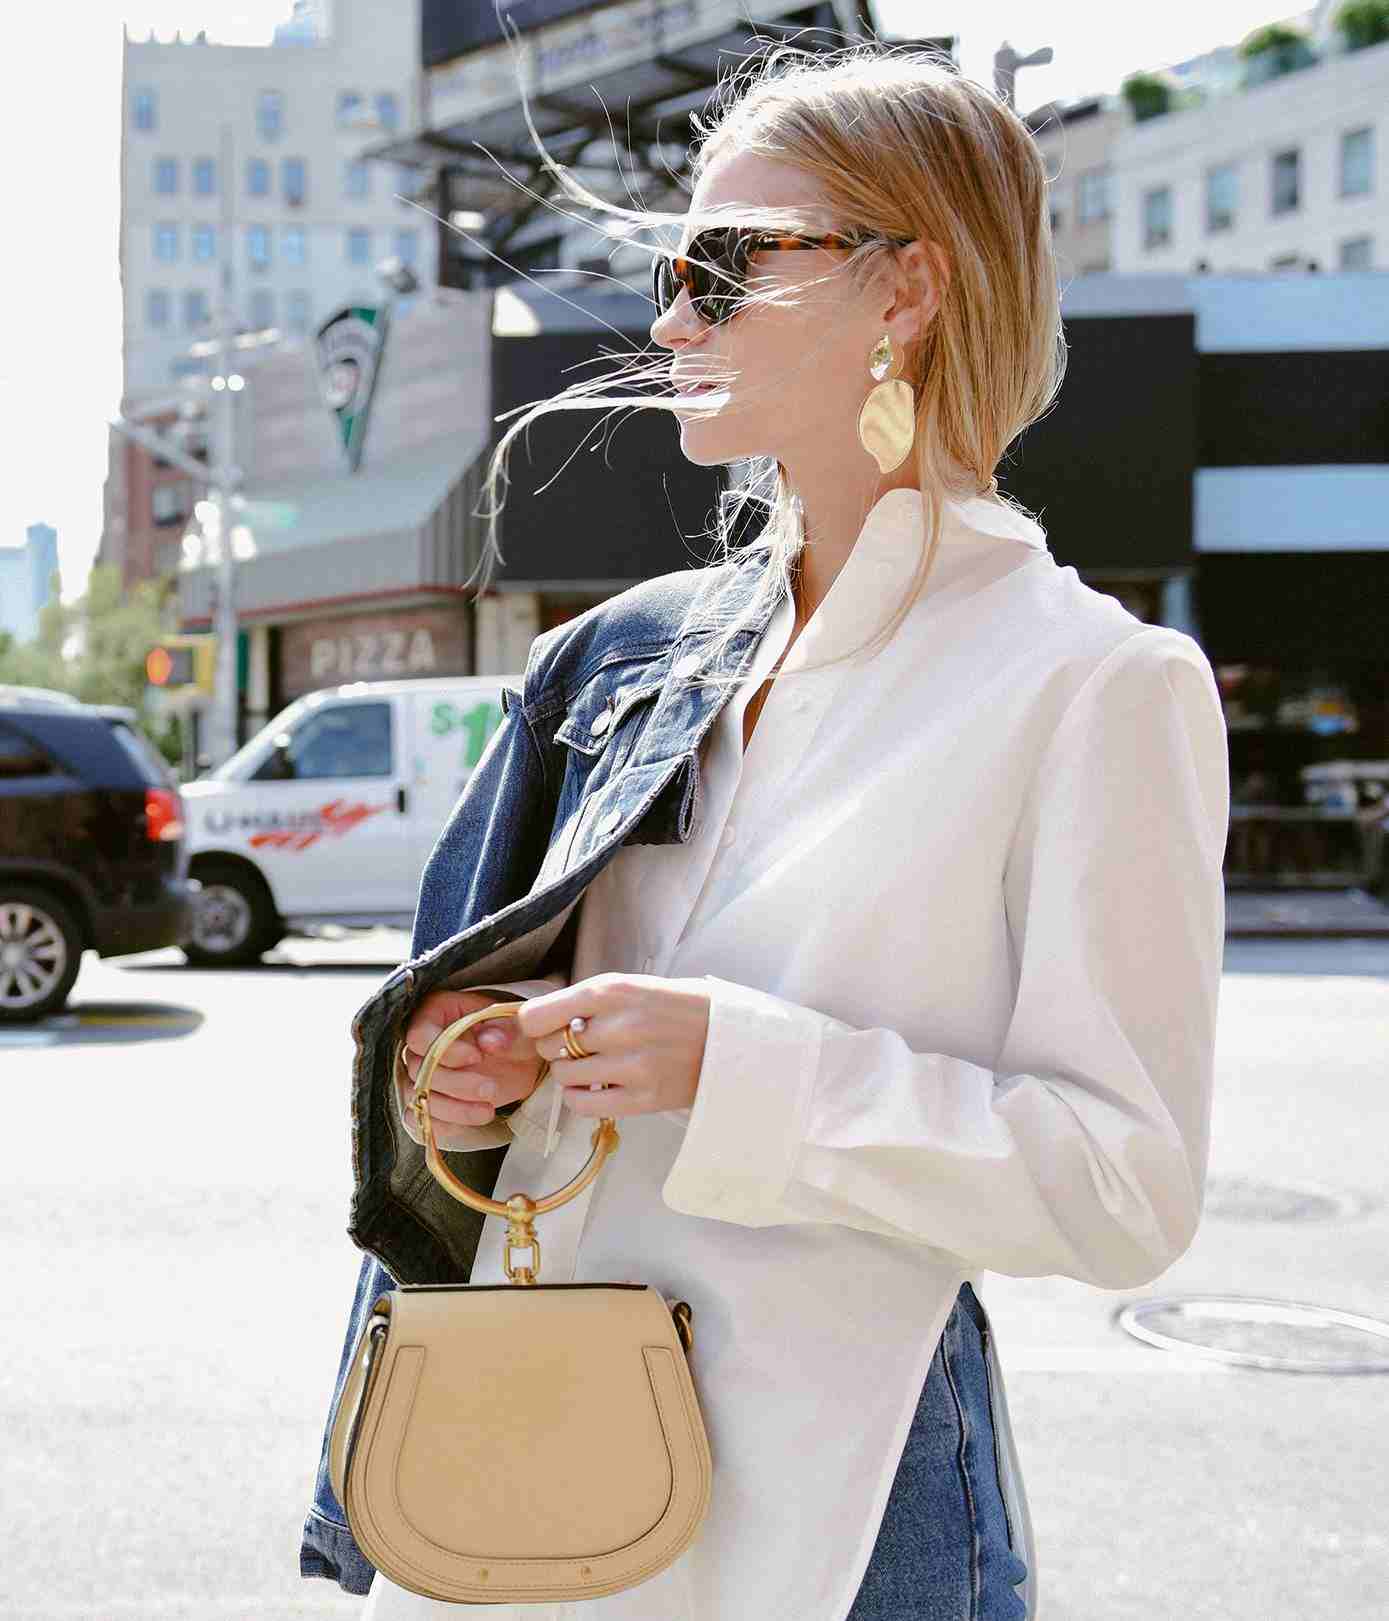 Bracelet Handbags Handtaschen Trends 2019 Denim Look blonde Haare Hemdbluse